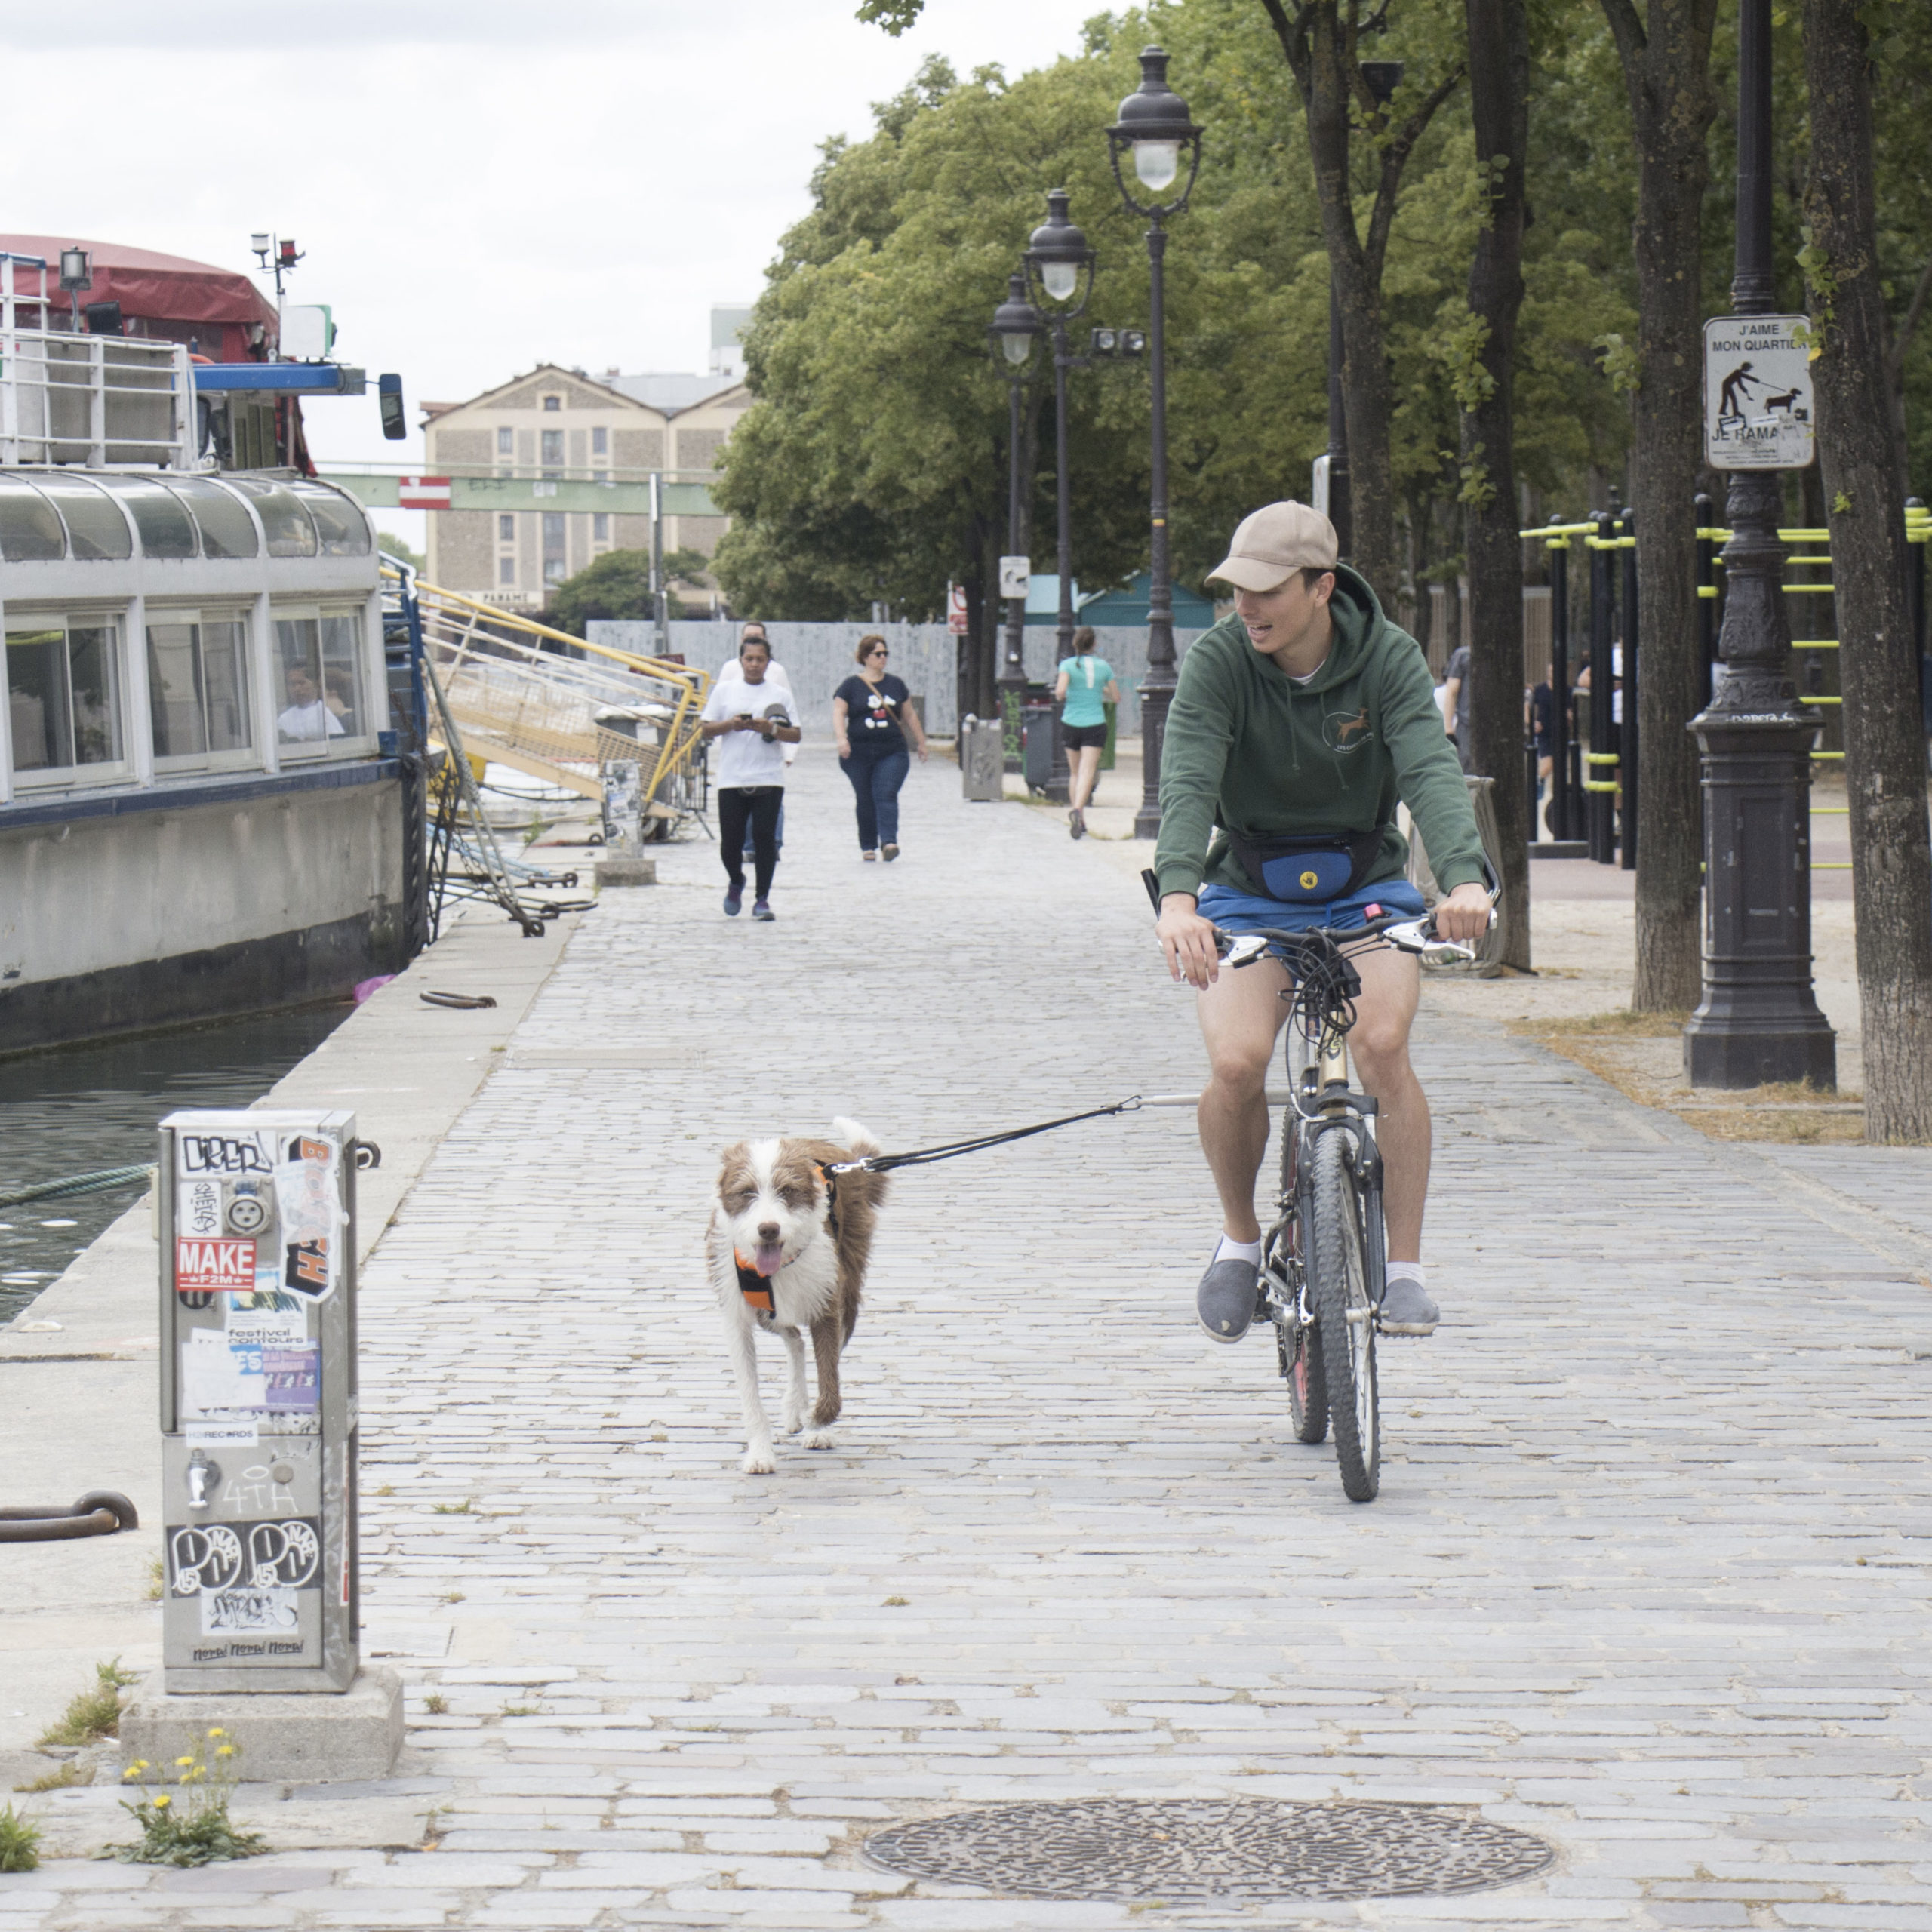 Comment Faire Du Vélo Avec Son Chien à Paris?